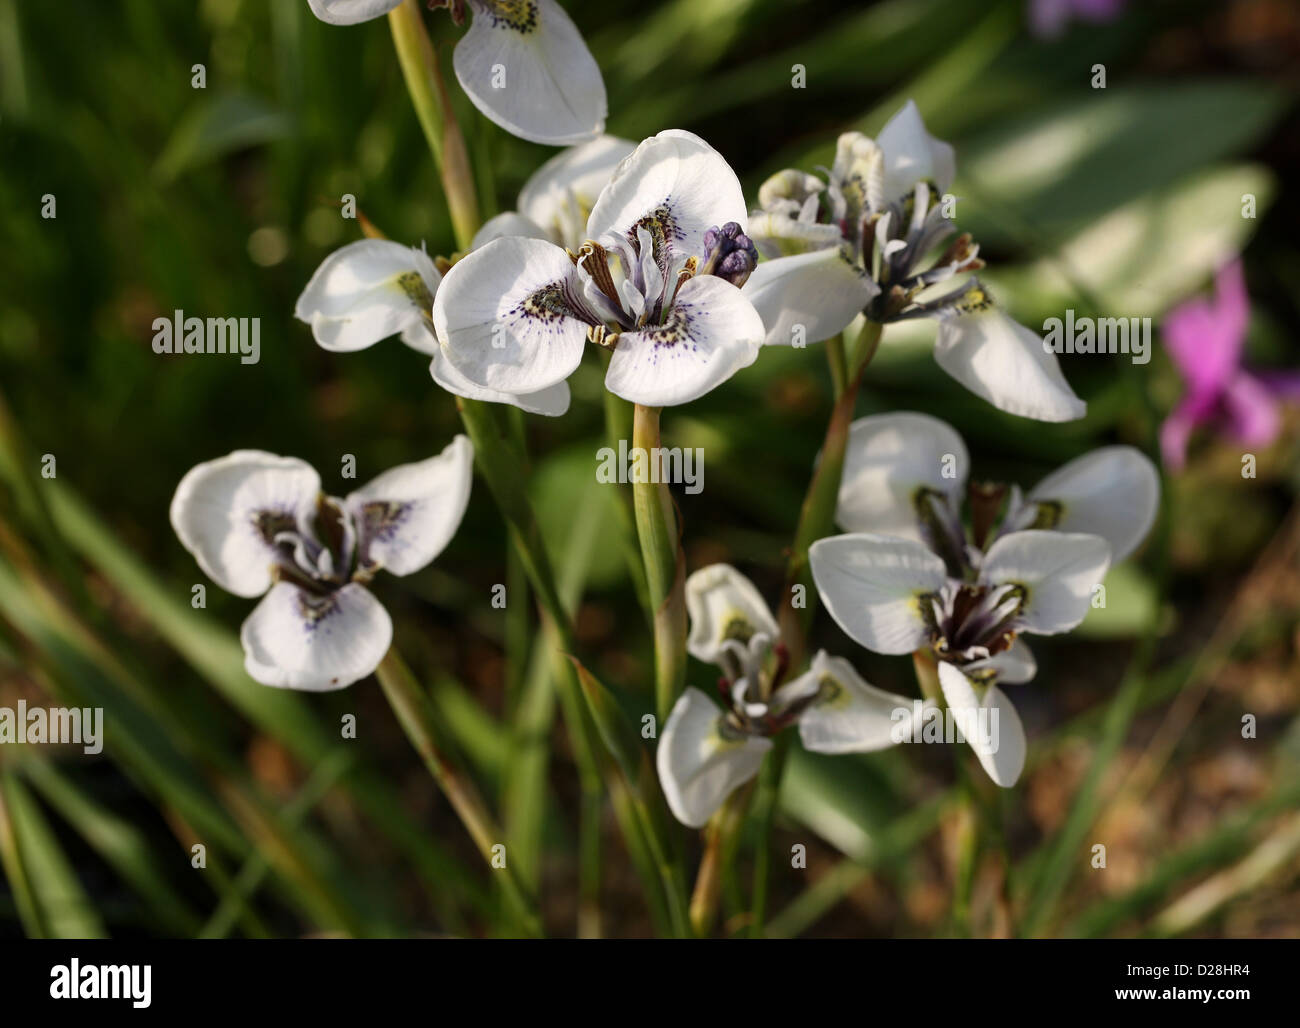 Moraea Tricuspidata, Iridaceae, Kapprovinz, Südafrika. Stockfoto